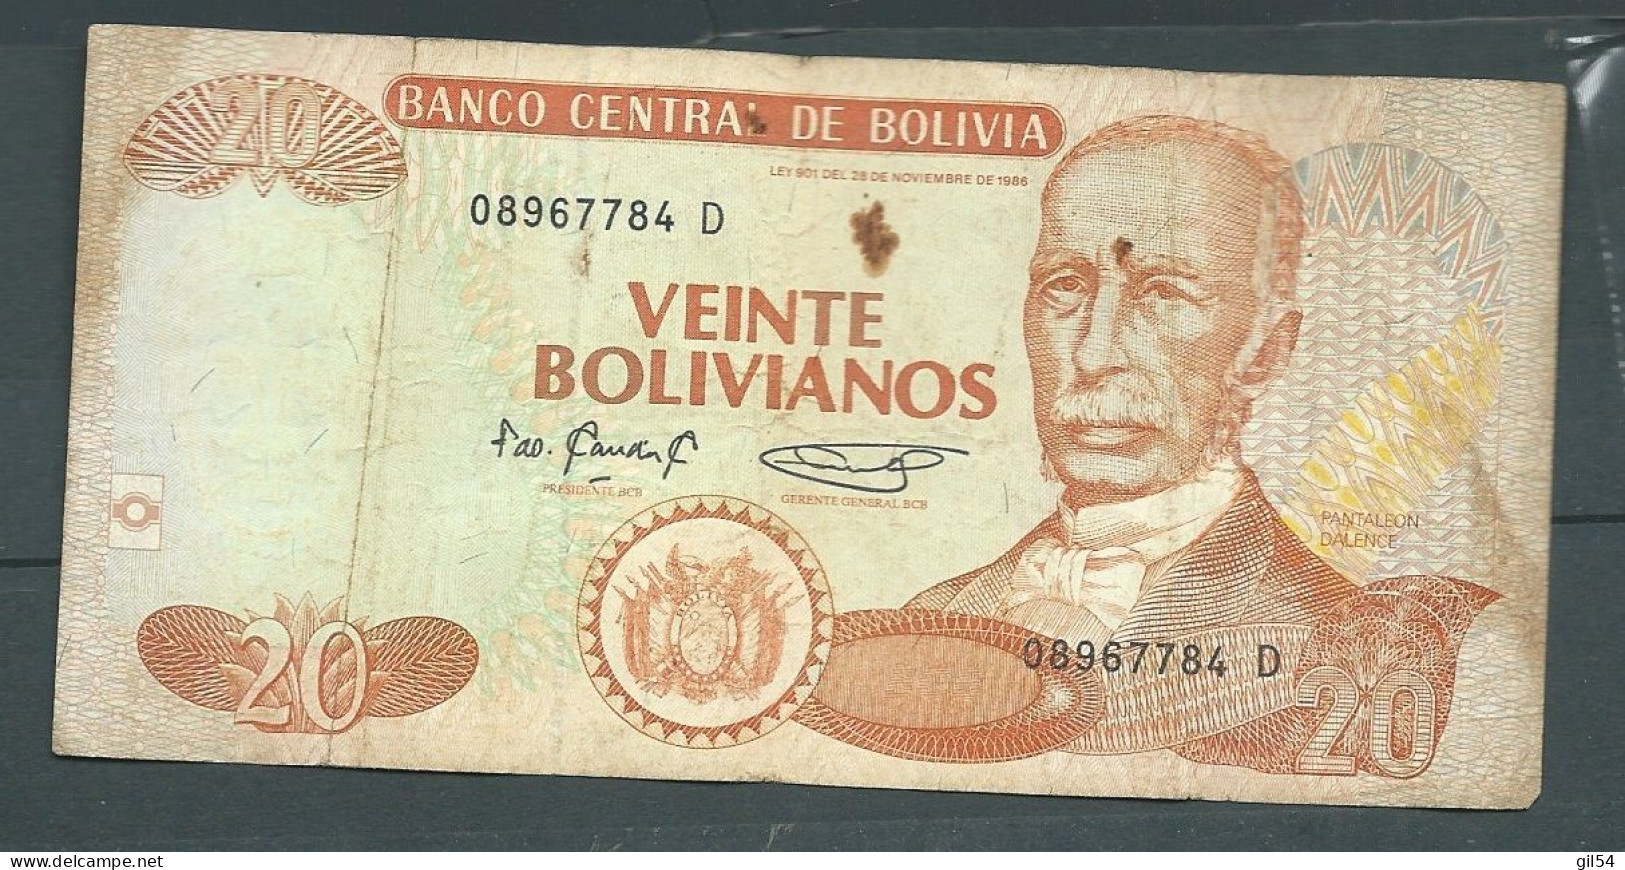 Bolivie - Bolivia 20 Bolivianos 1986  - 08967784 D - Laura 79 23 - Bolivien